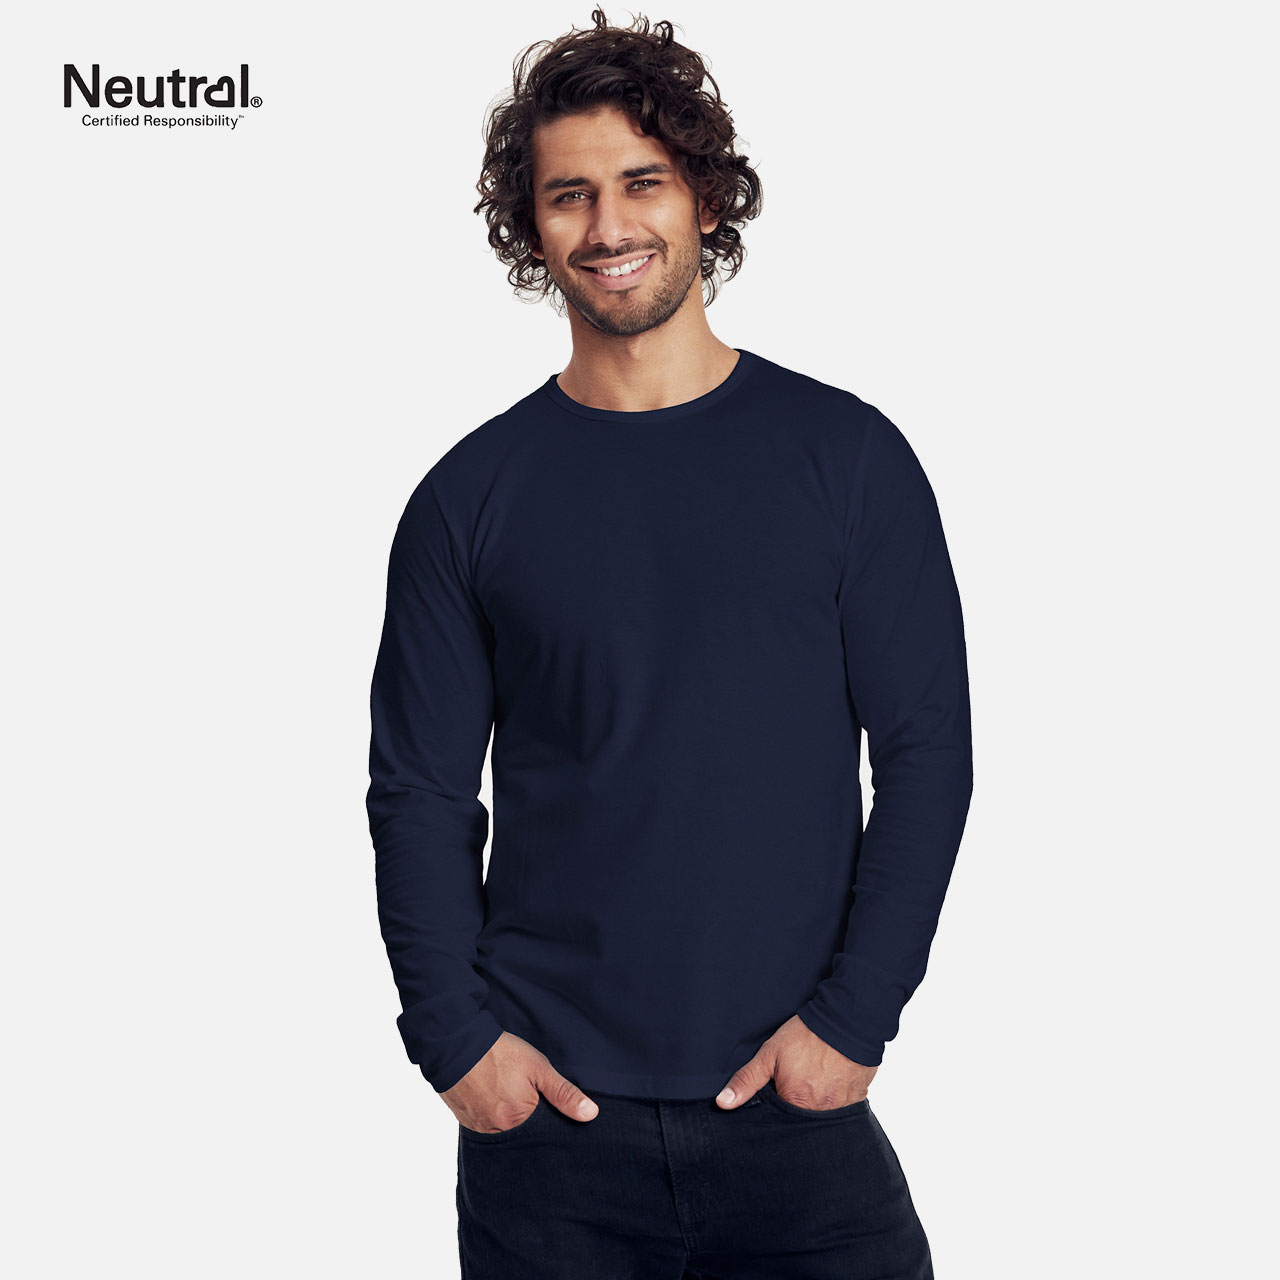 Doppelpack Mens Long Sleeve Shirt - Bio Baumwolle - Weiss / Navy XL Weiss / Navy